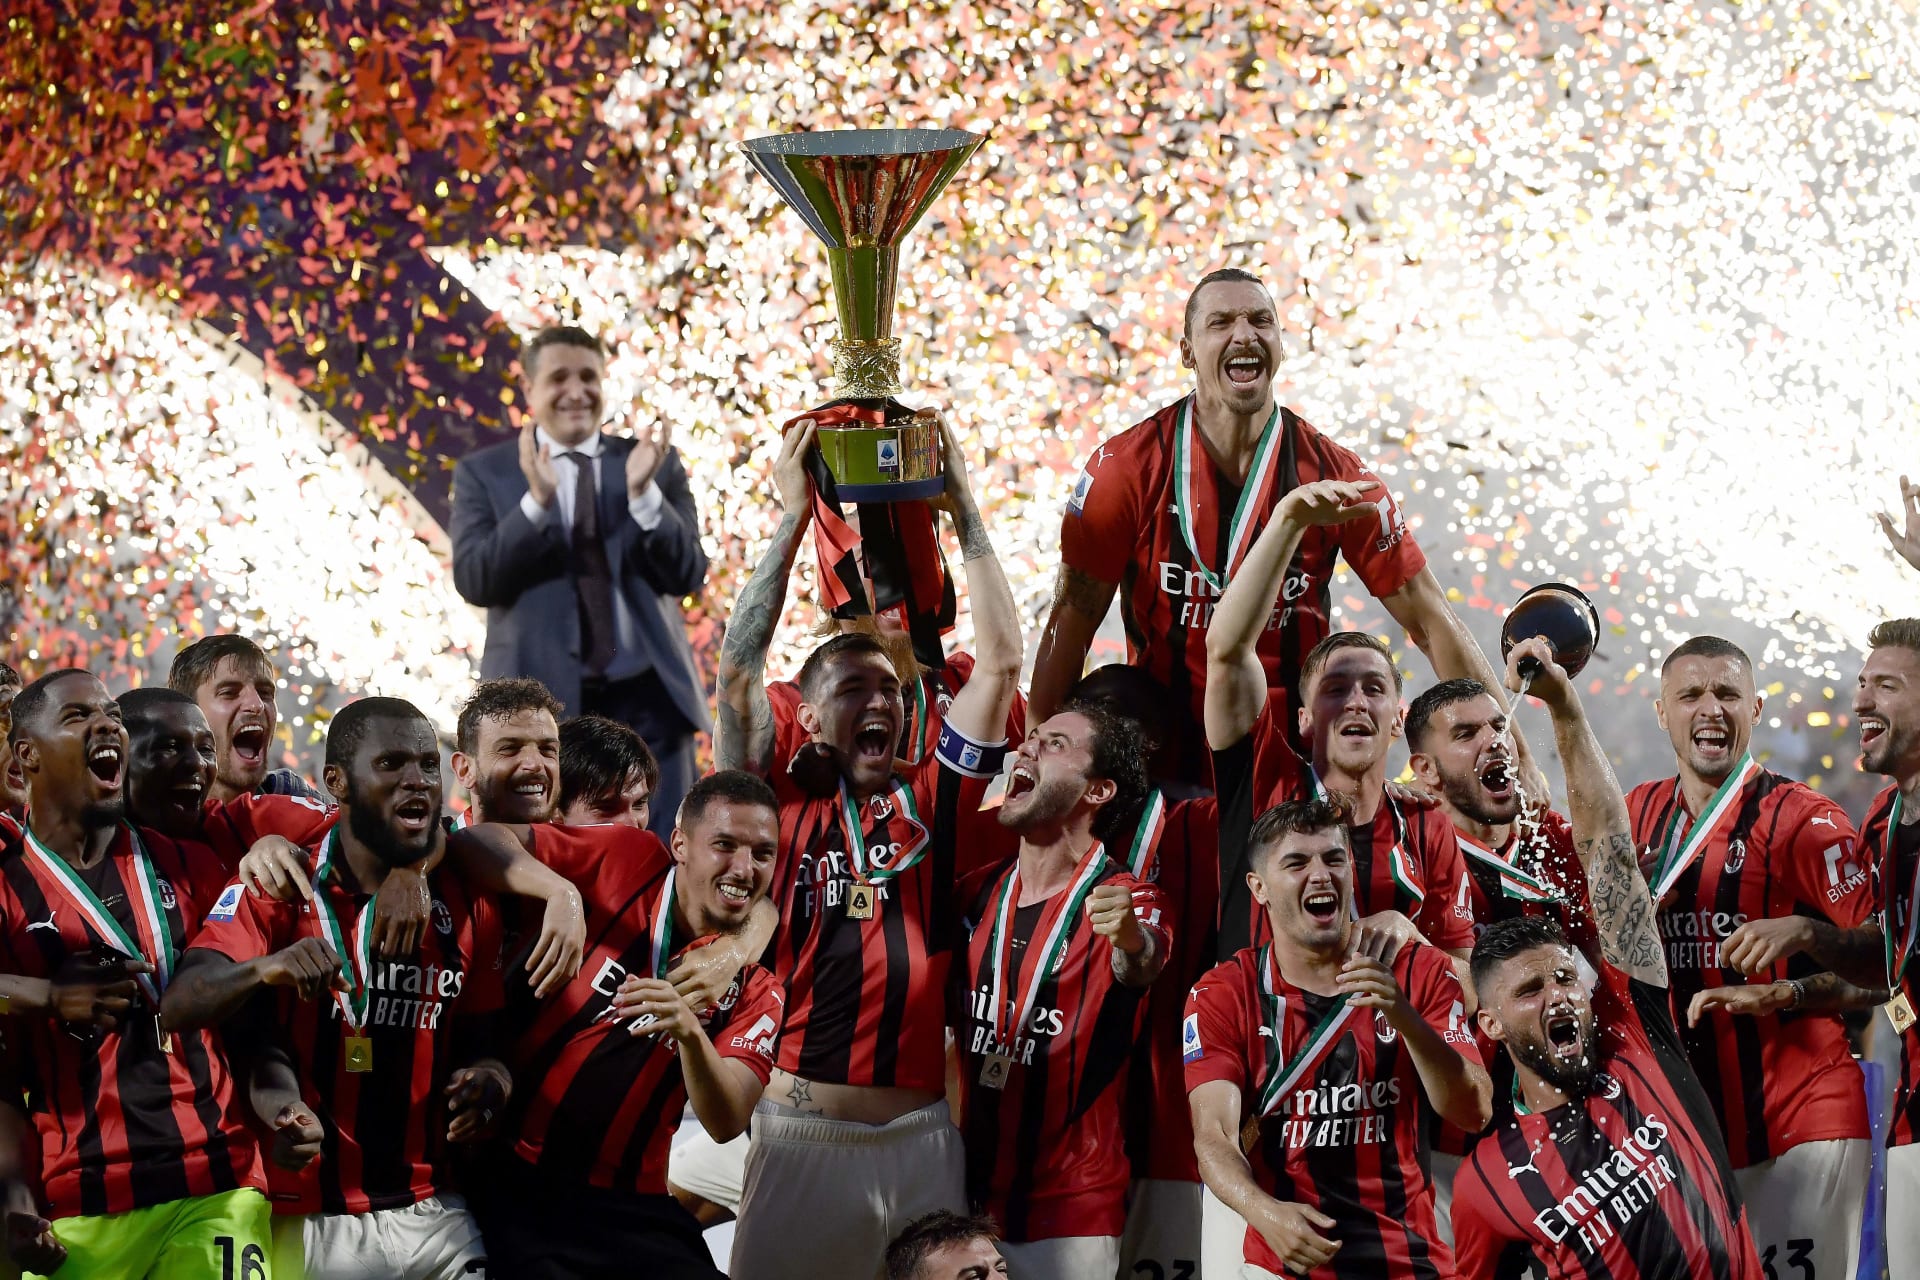  ميلان يفوز بلقب الدوري الإيطالي لأول مرة منذ أكثر من عقد